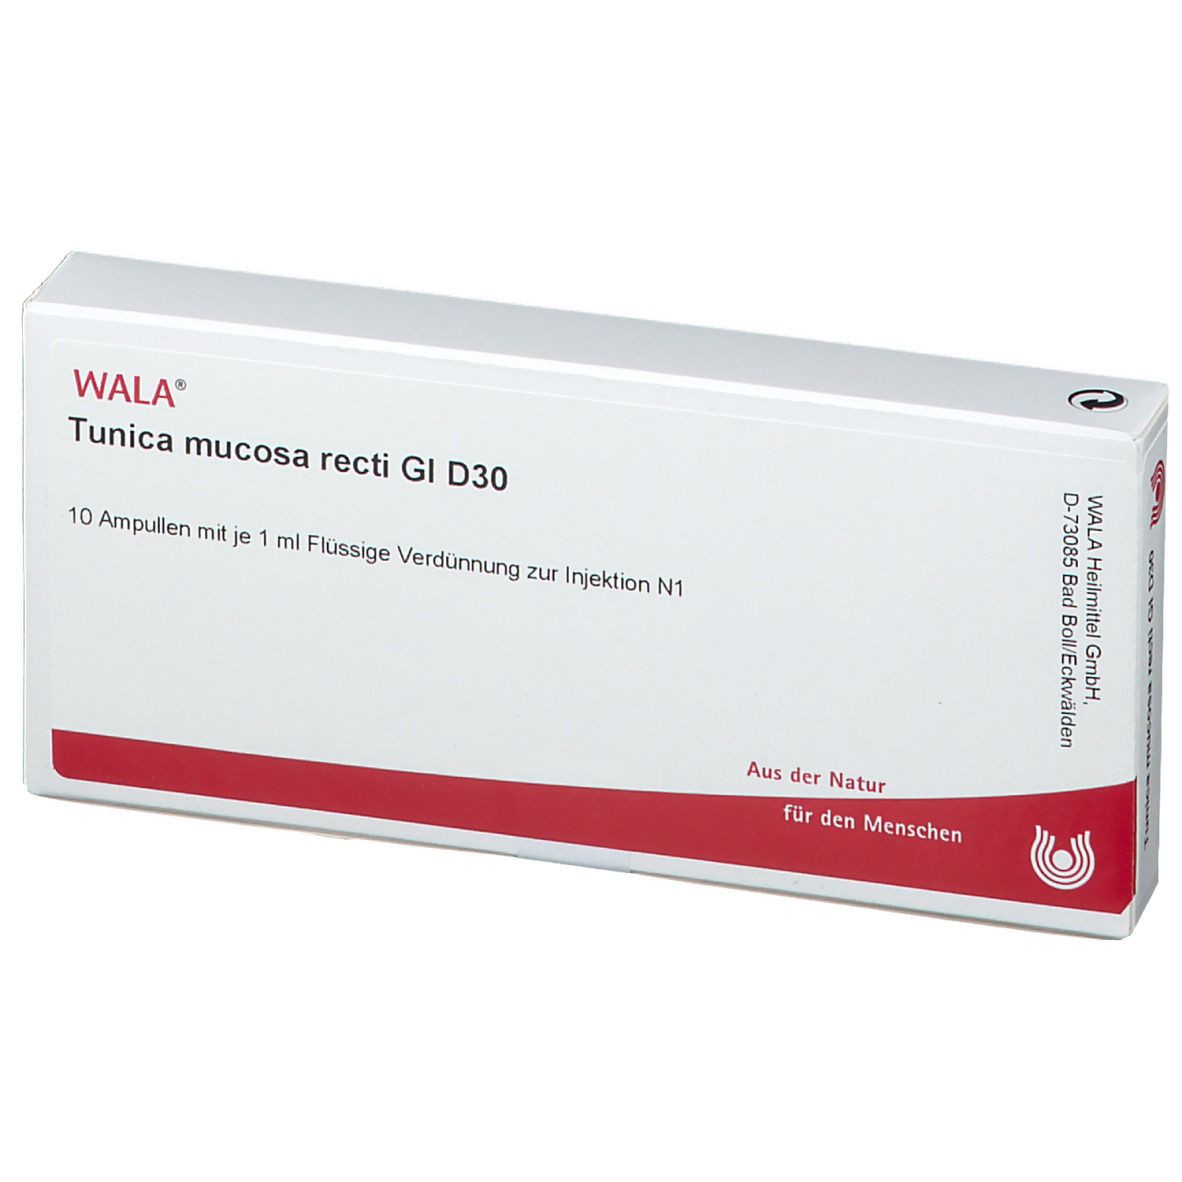 WALA® Tunica mucosa recti Gl D 30